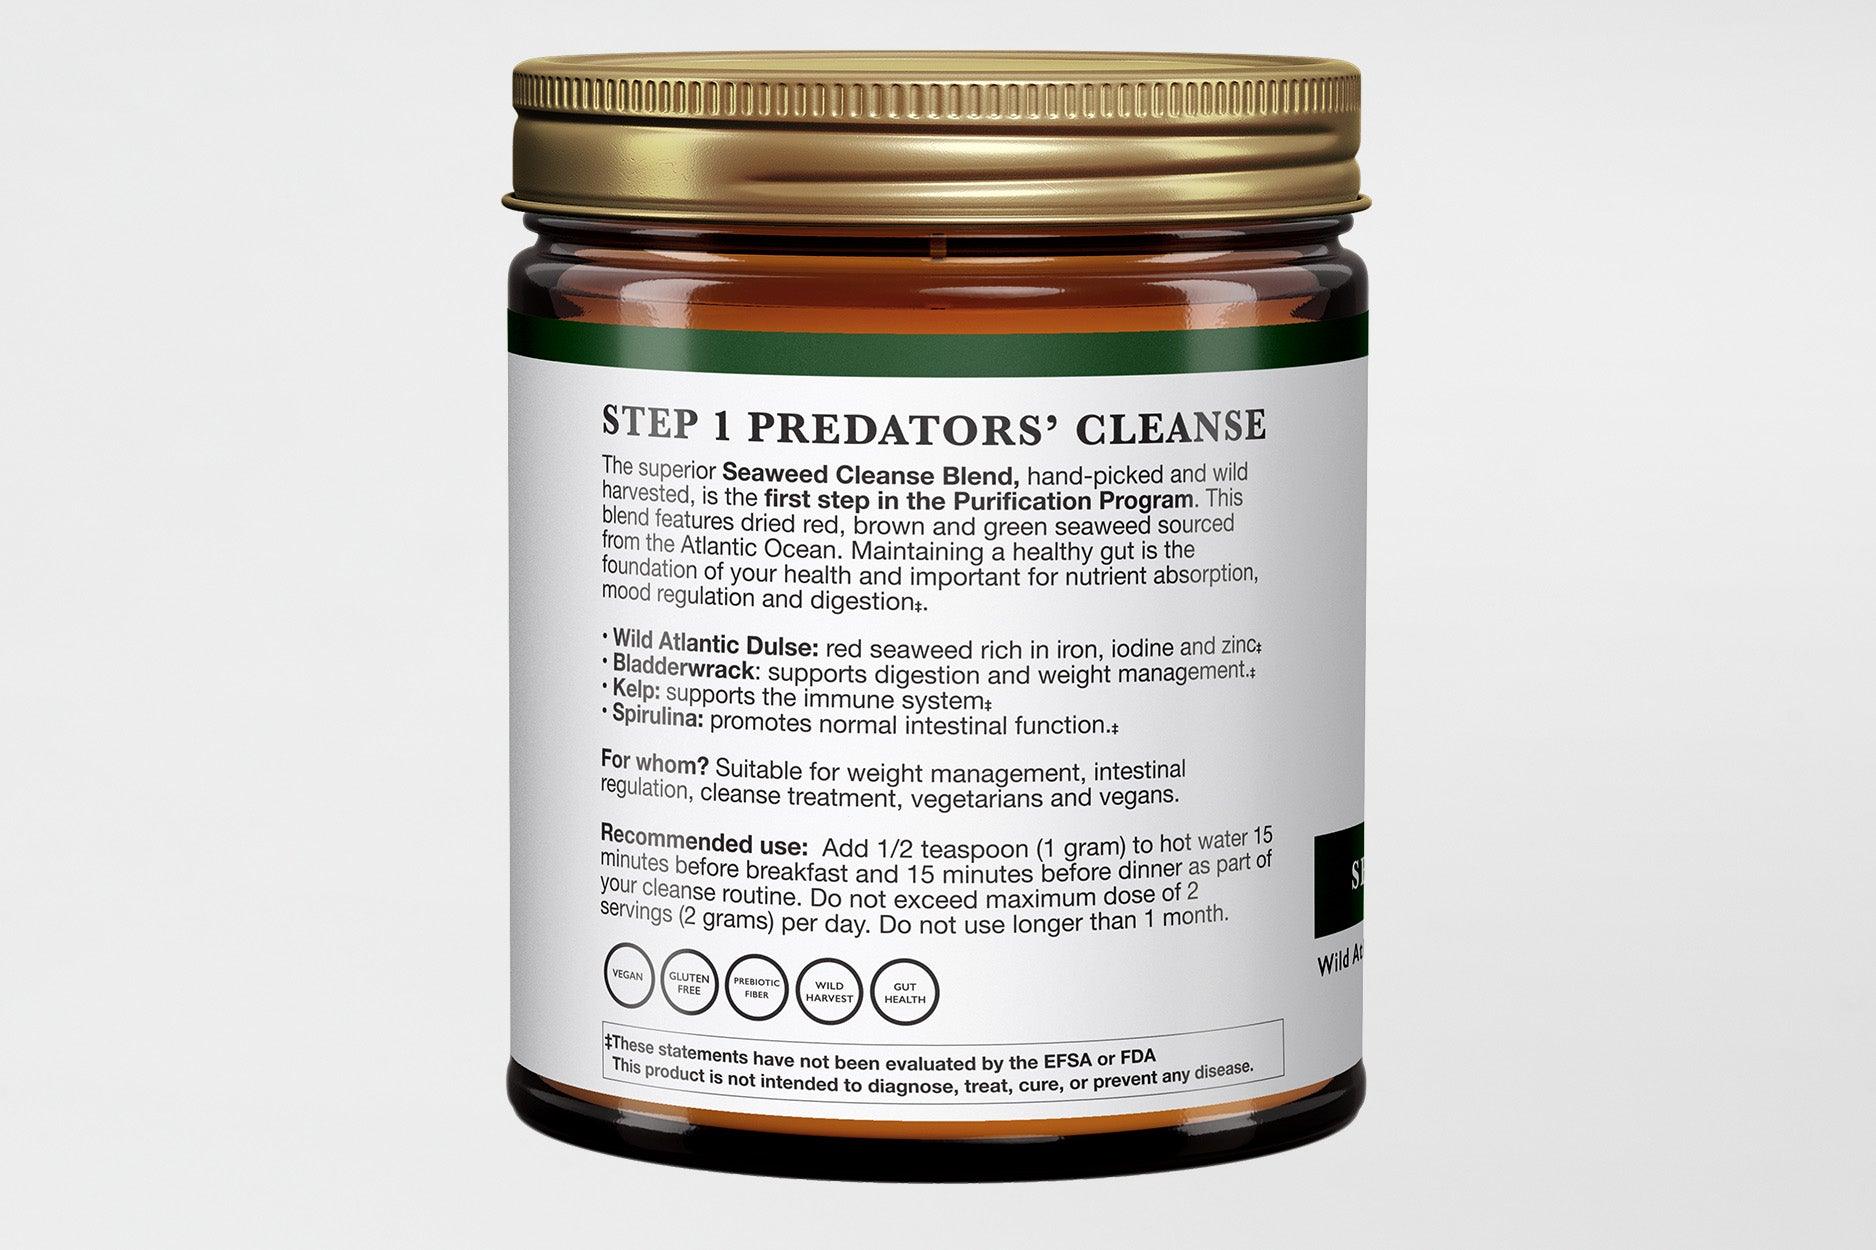 Predator Seaweed Cleanse - Pre-cycle